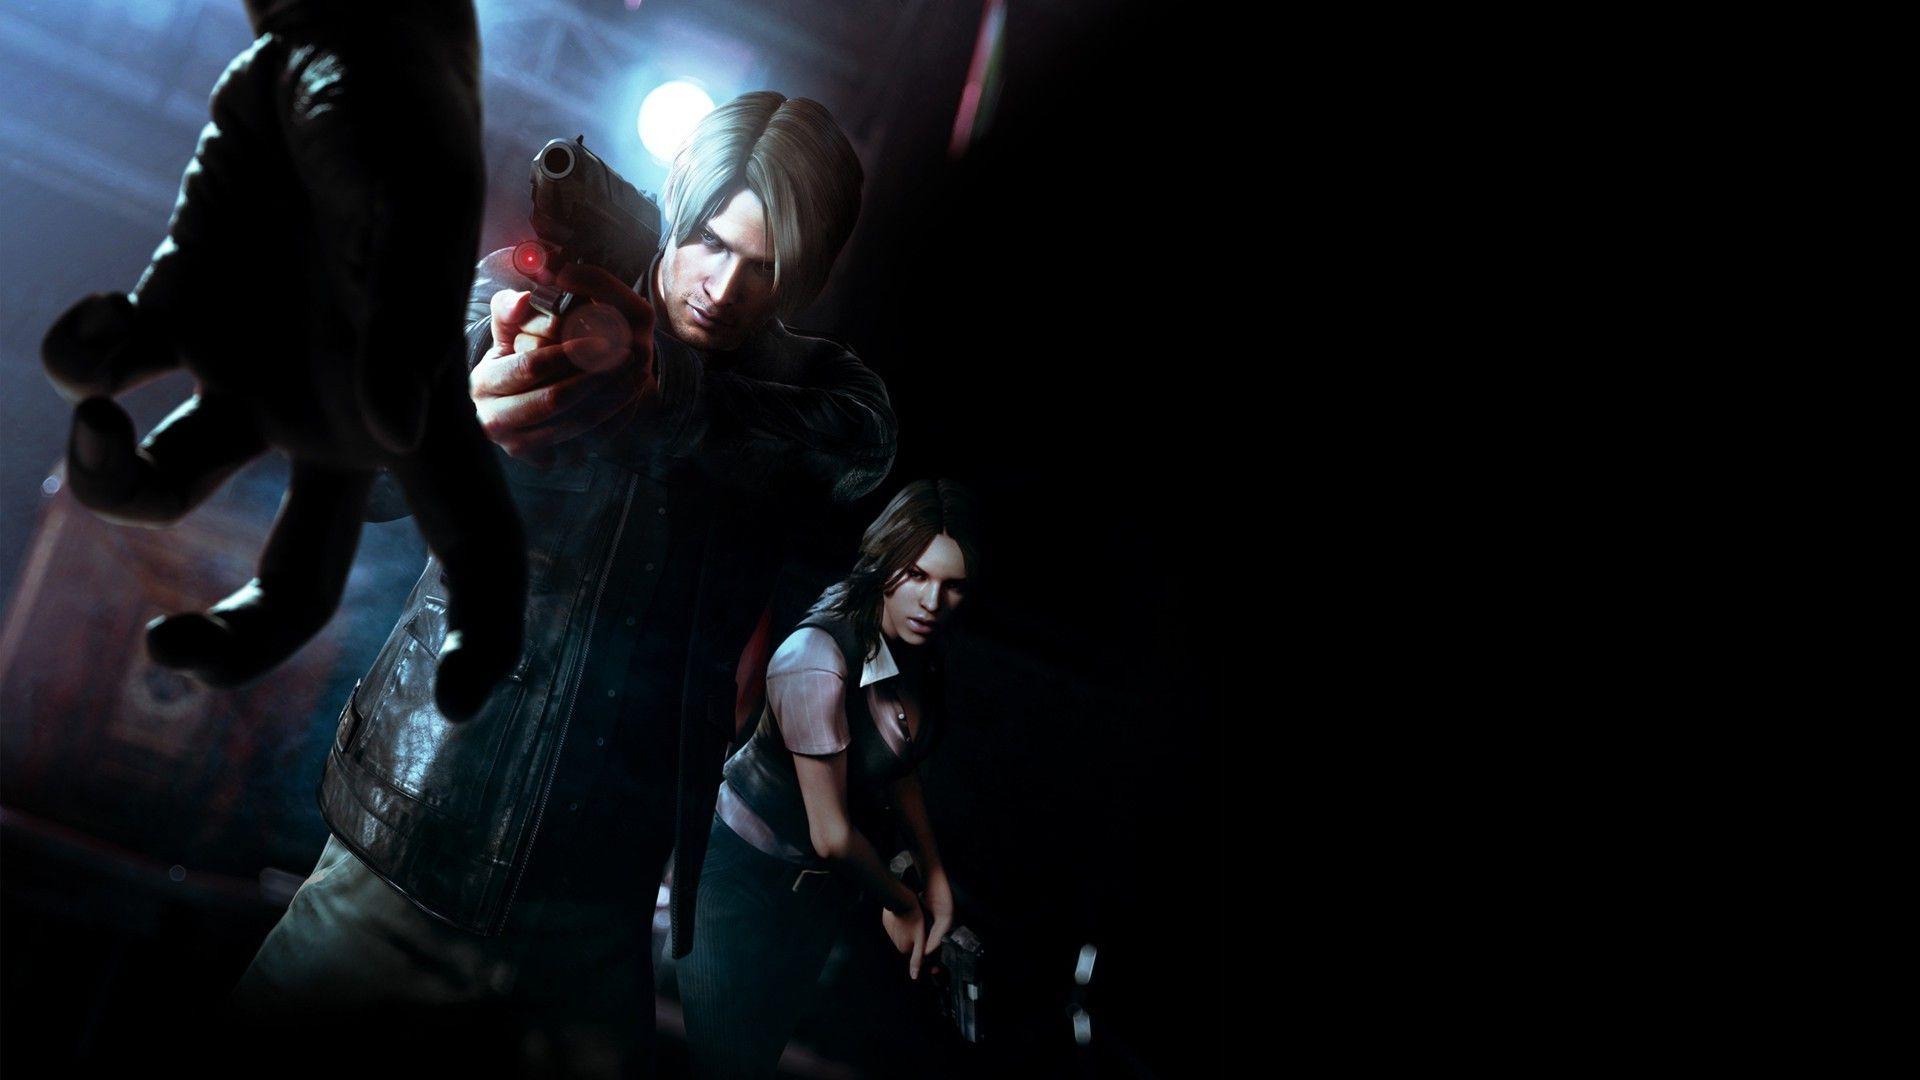 Wallpaper, gun, video games, black background, Resident Evil